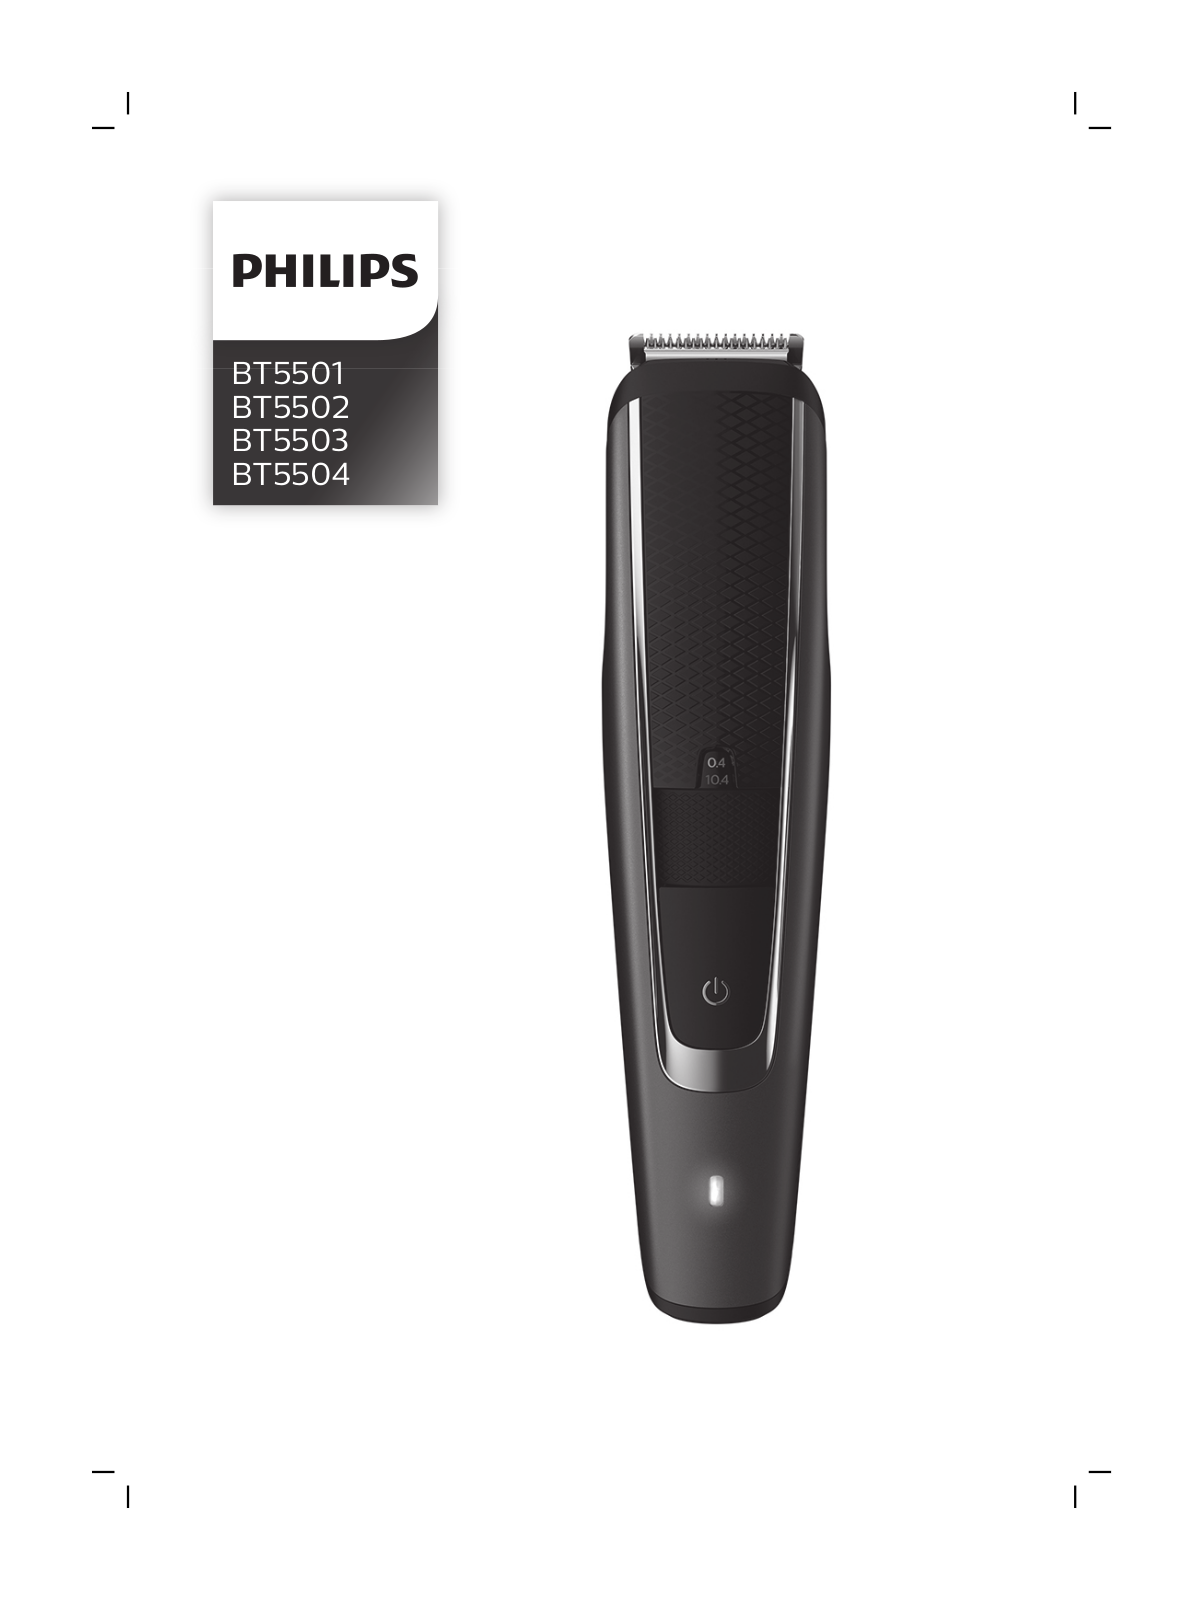 Philips BT5501, BT5502, BT5503, BT5504 User Manual